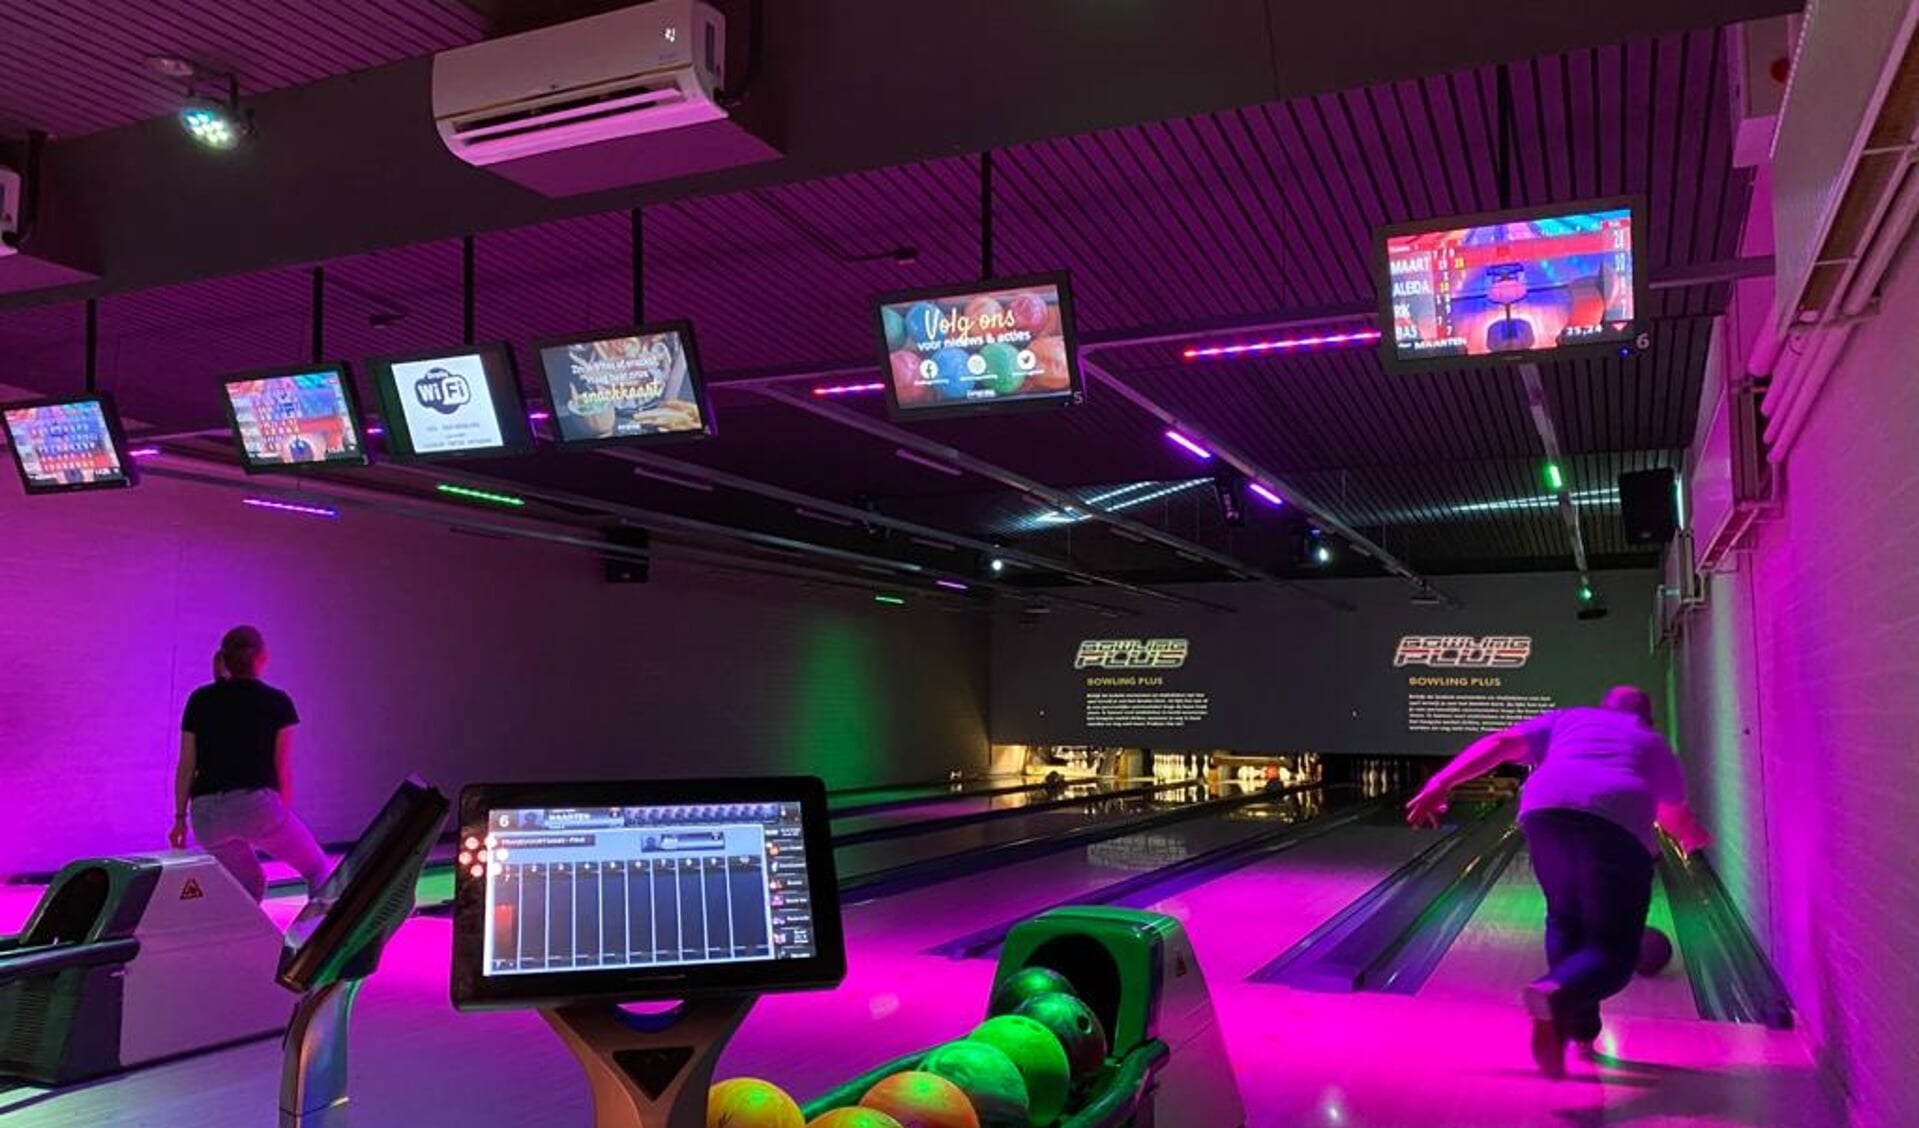 De bowlingzaal bij Putter Eng. Op de voorgrond is de tablet te zien waarmee bezoekers eten en drinken kunnen bestellen. 